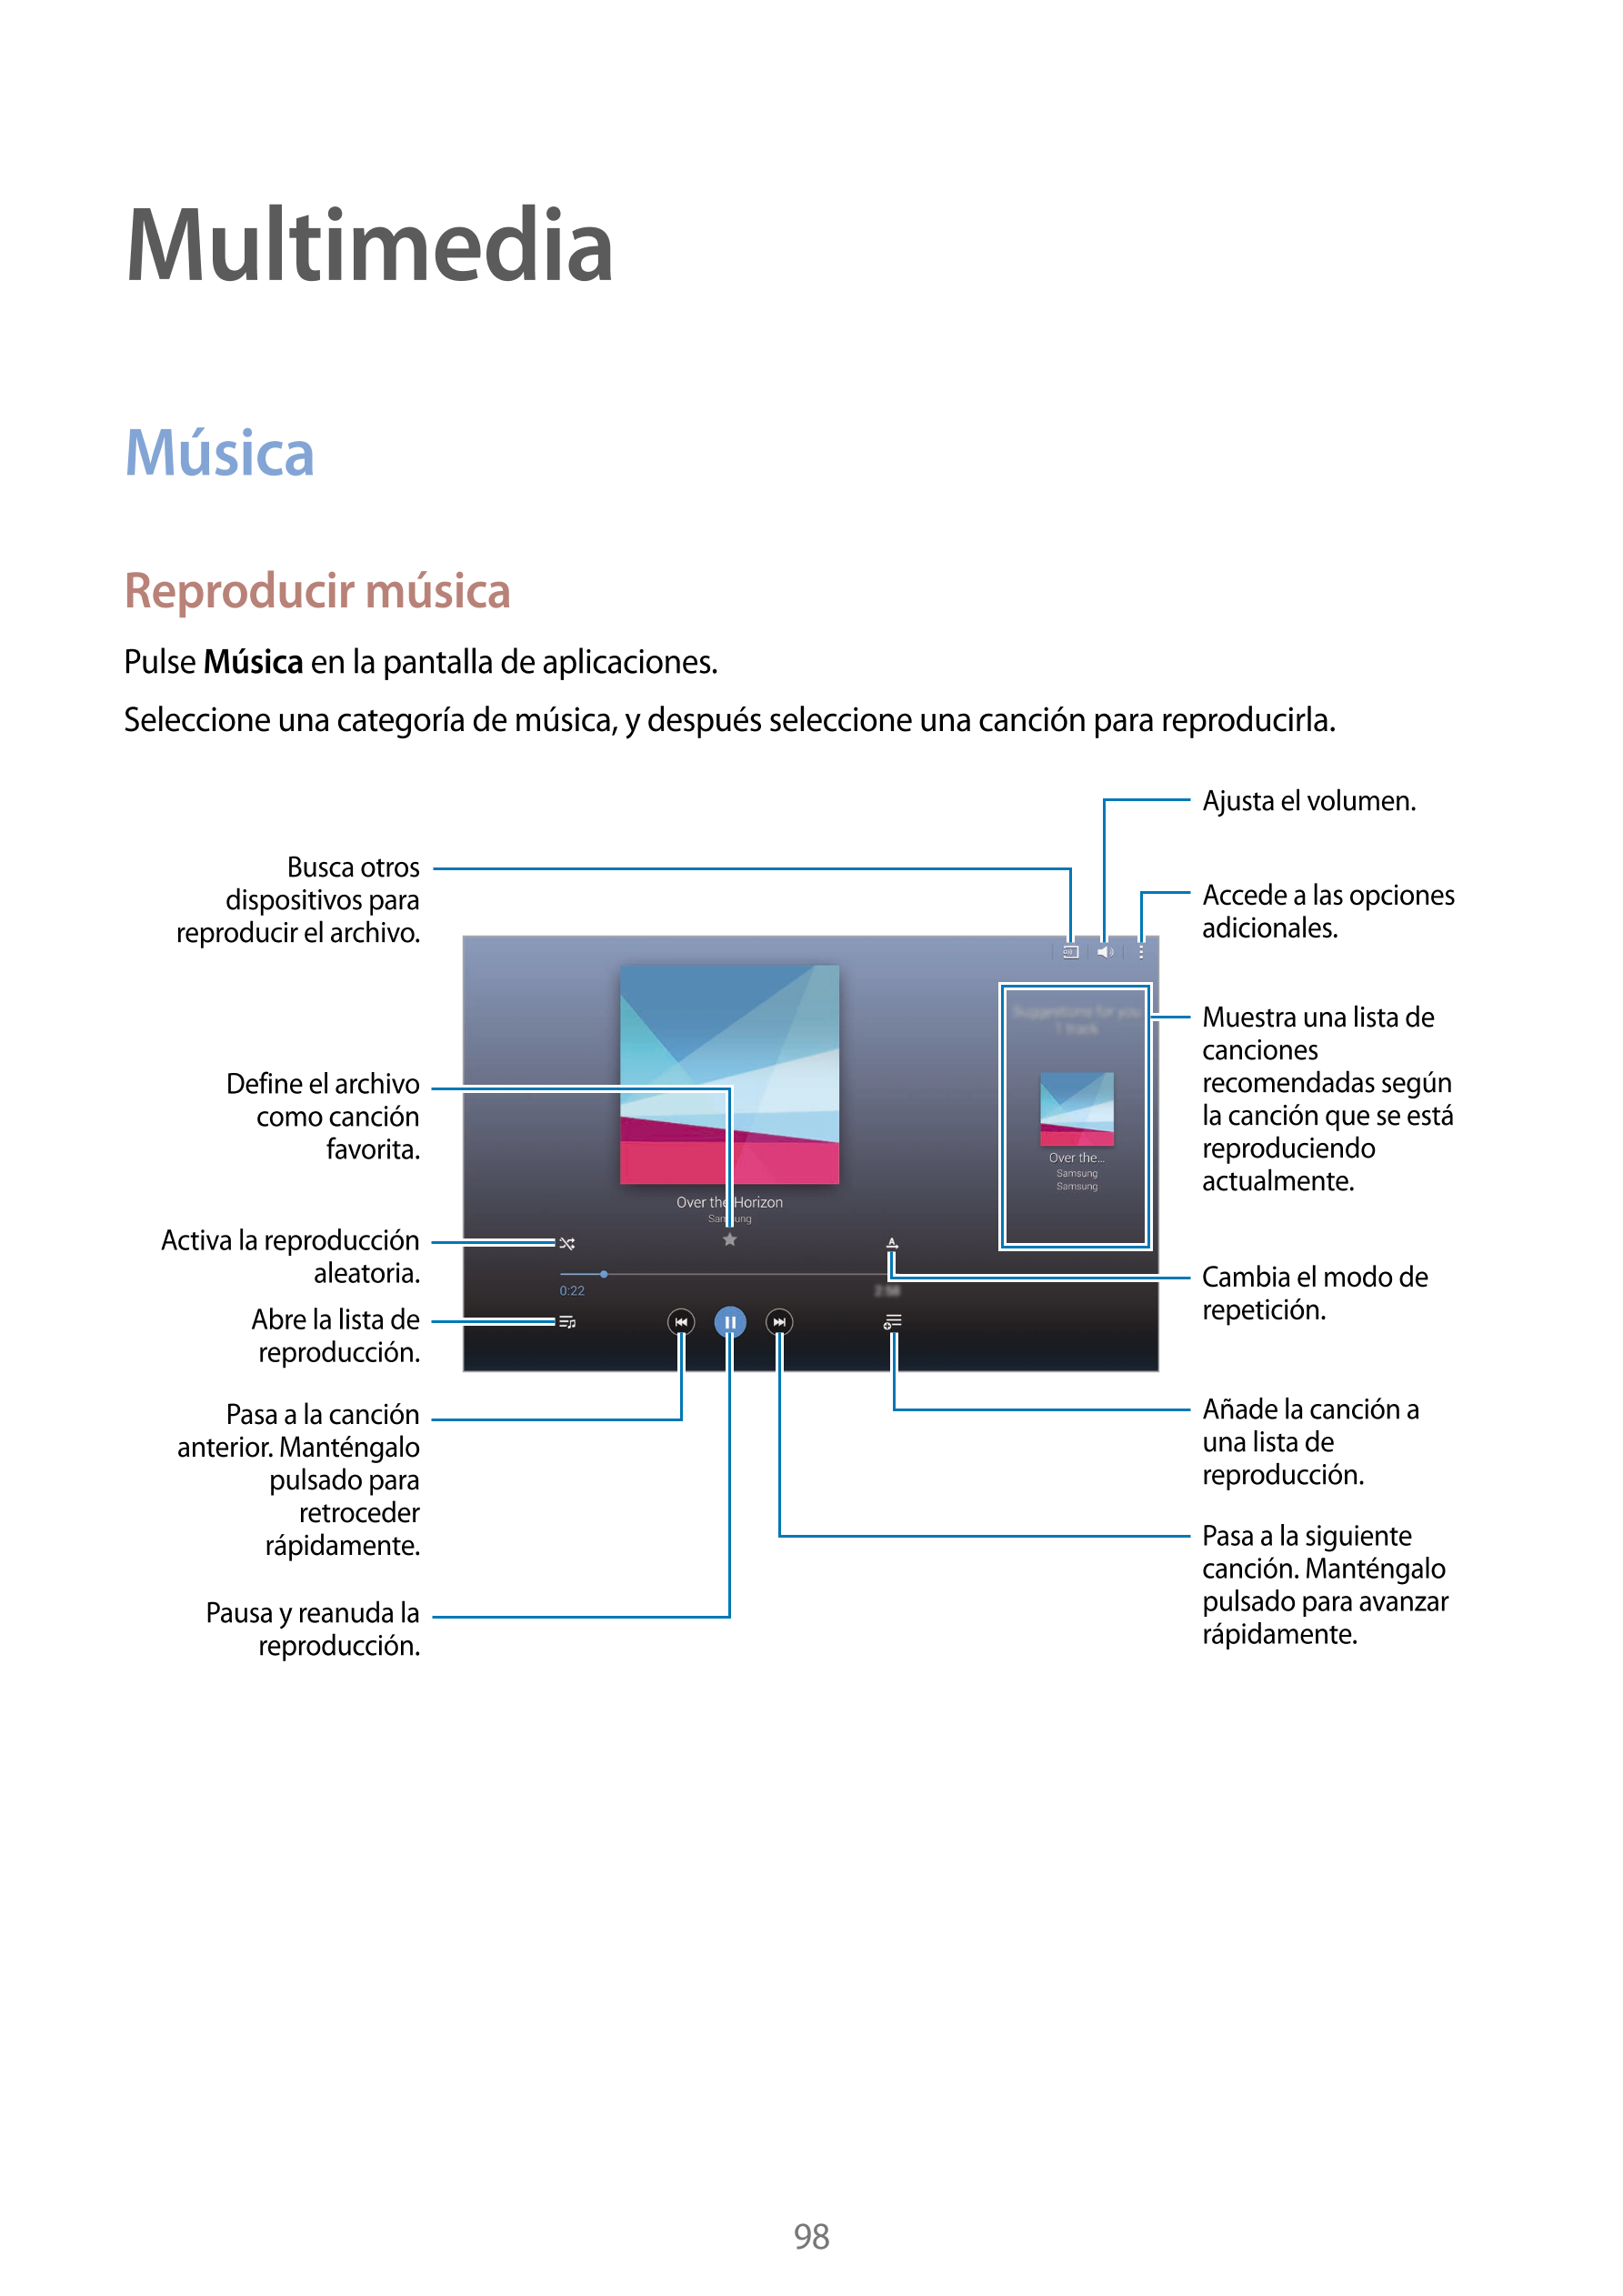 Multimedia
Música
Reproducir música
Pulse  Música en la pantalla de aplicaciones.
Seleccione una categoría de música, y después 